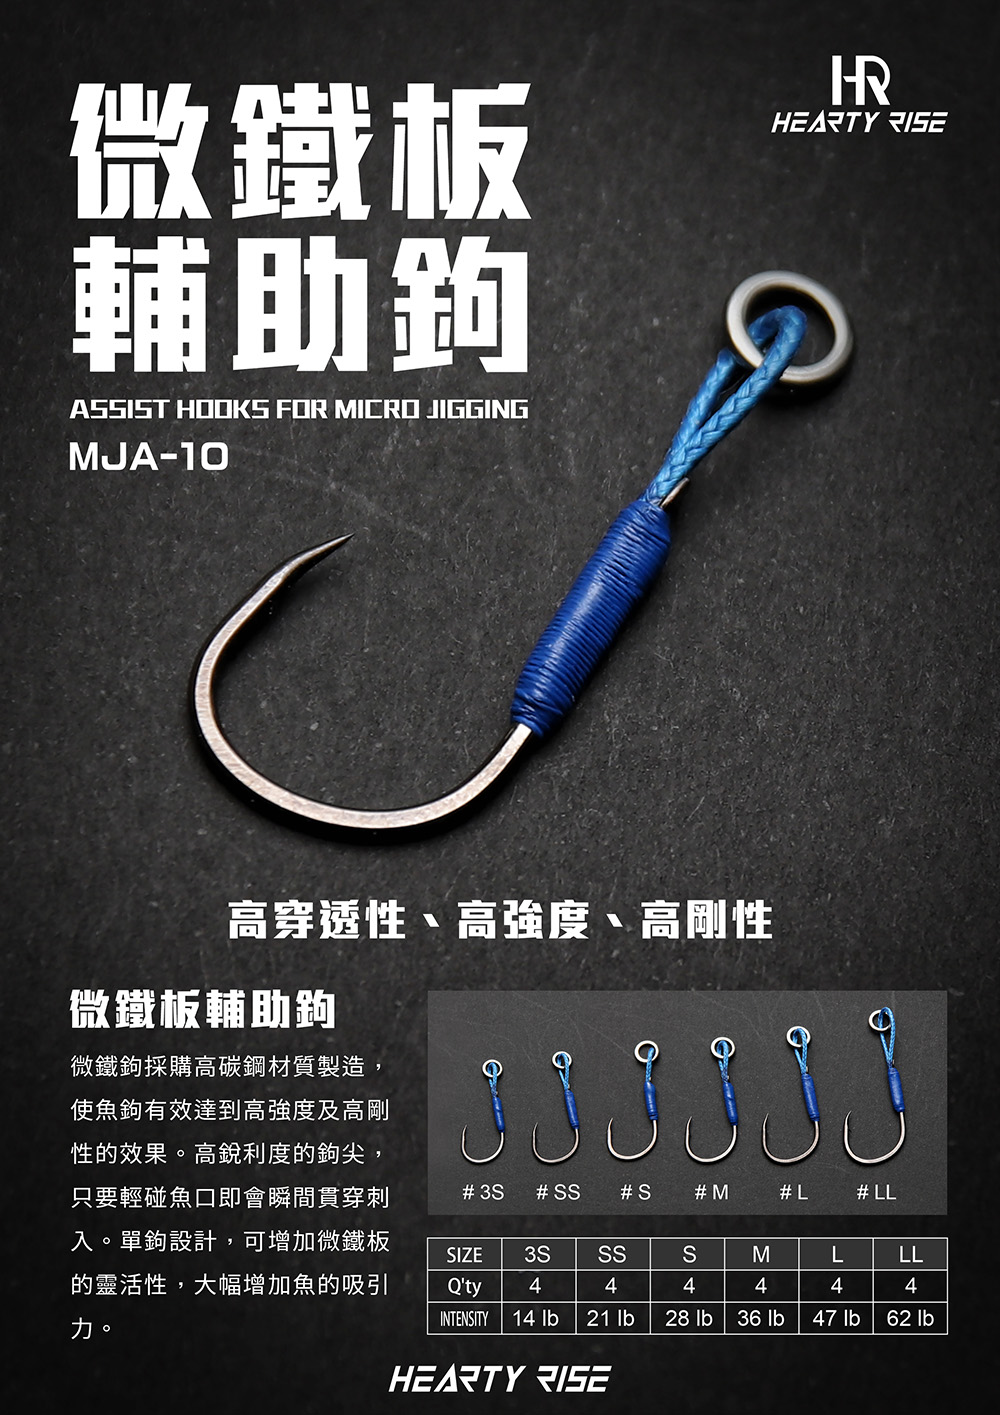 03 HR 微鐵板輔助鉤 MJA-10 中文 1000